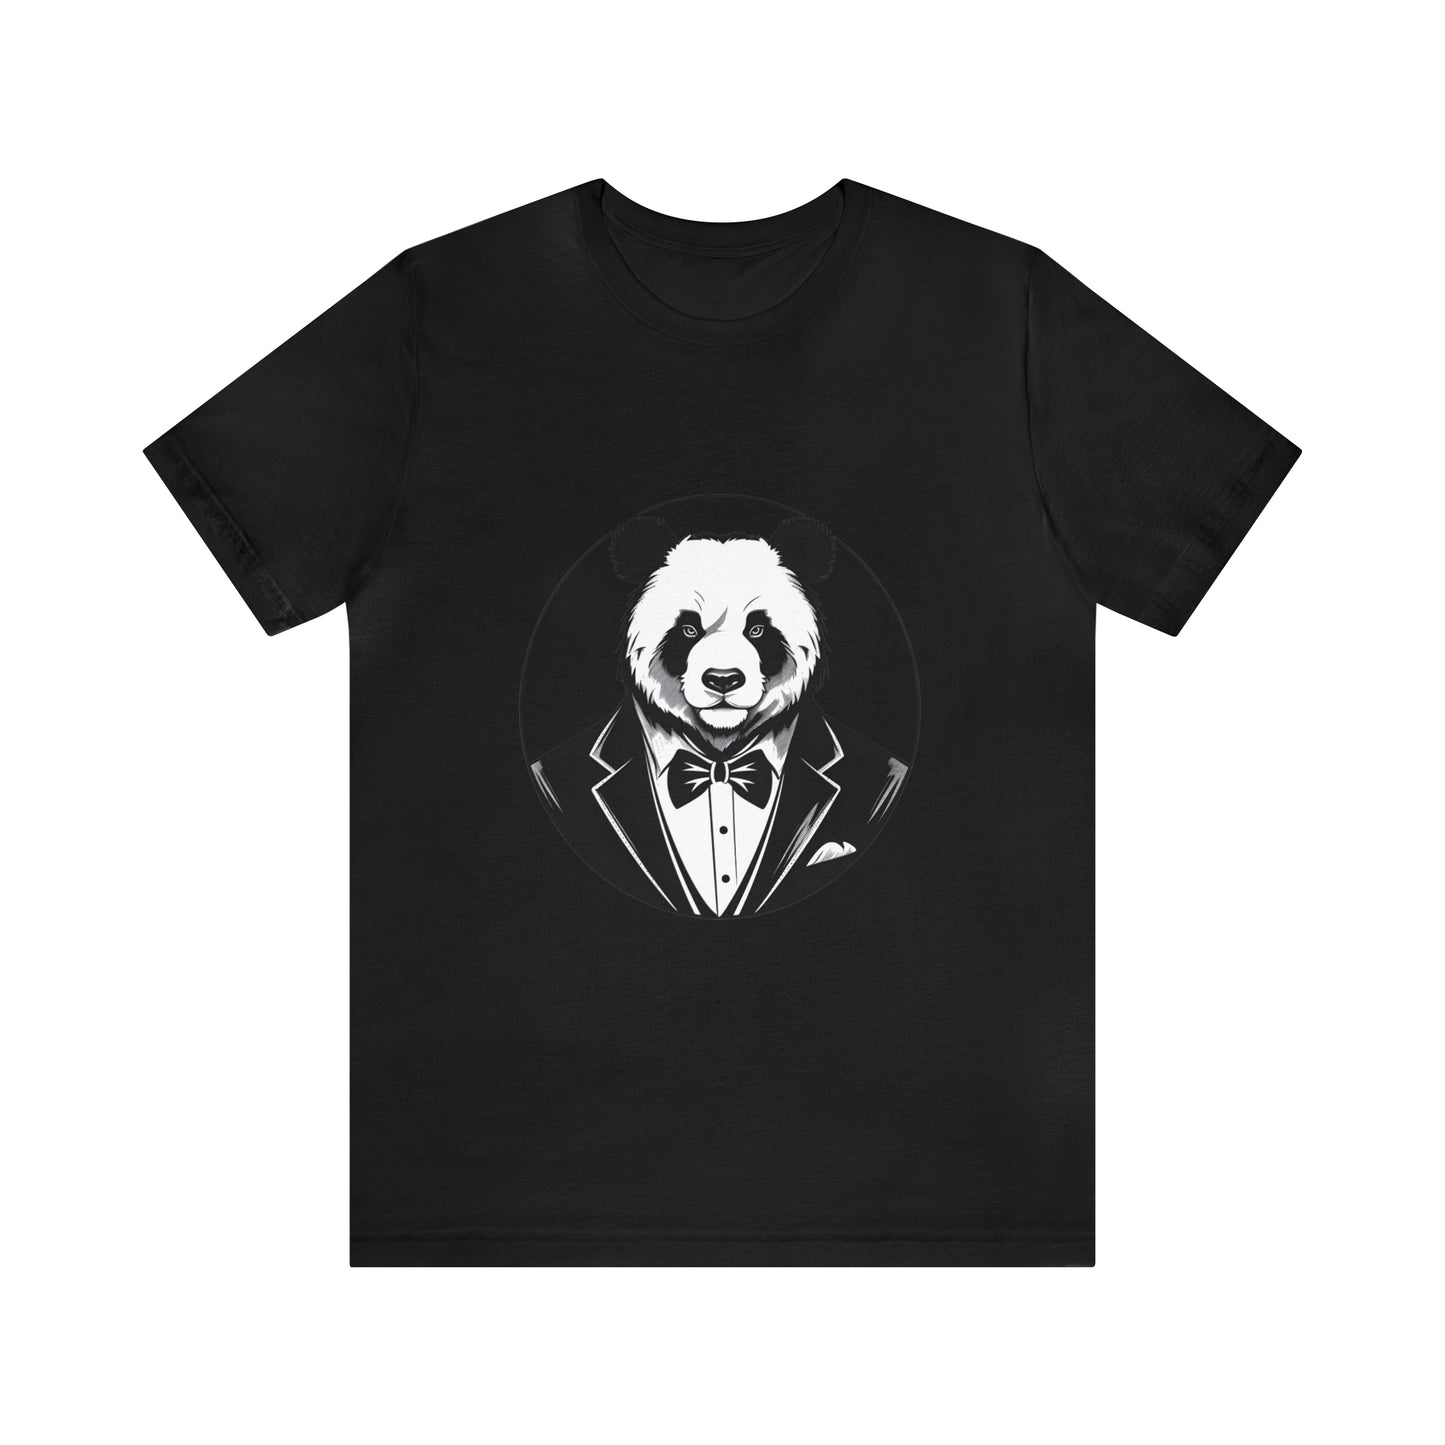 Unisex Jersey Short Sleeve Tee (Panda)